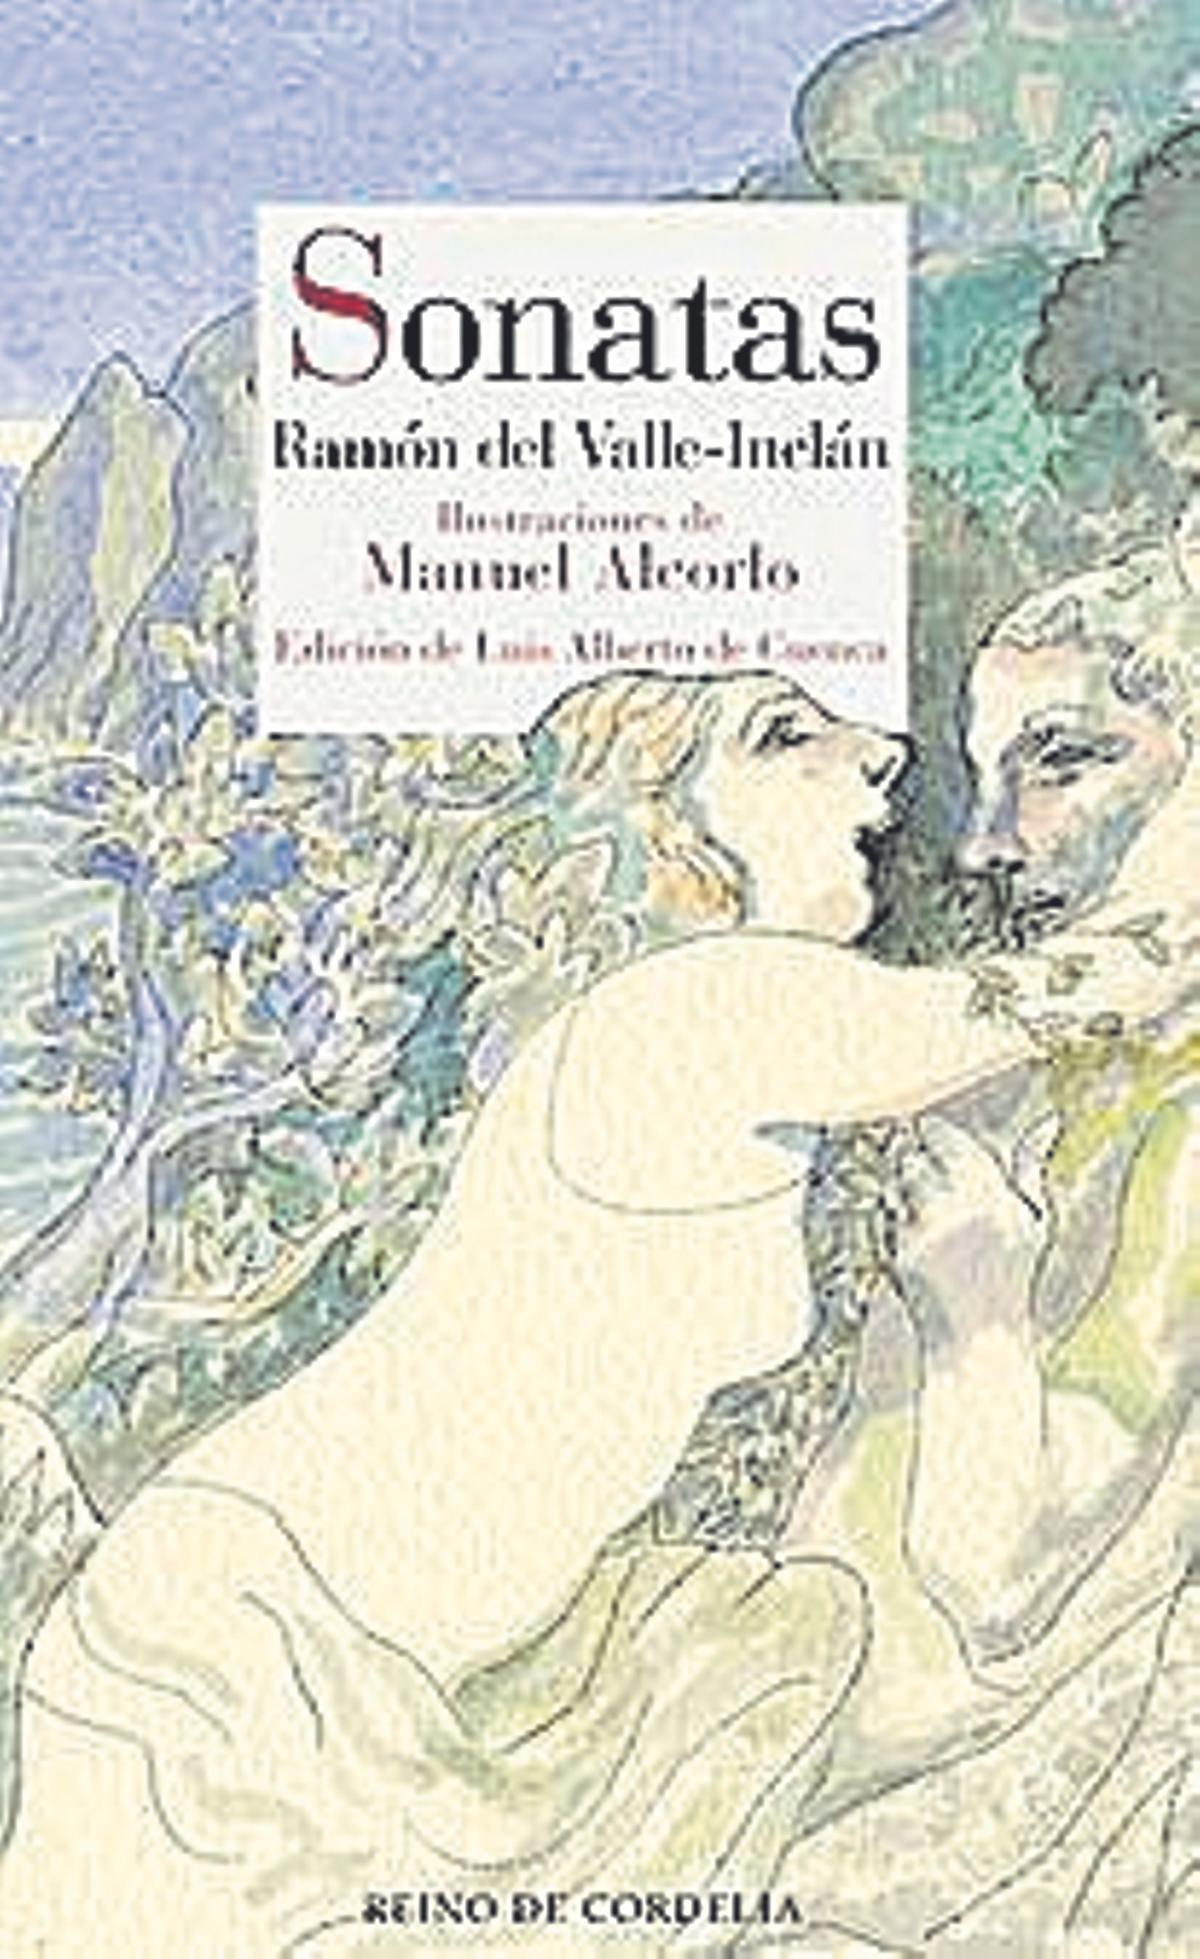 Imagen de la portada de 'Sonatas' de Valle-Inclán.